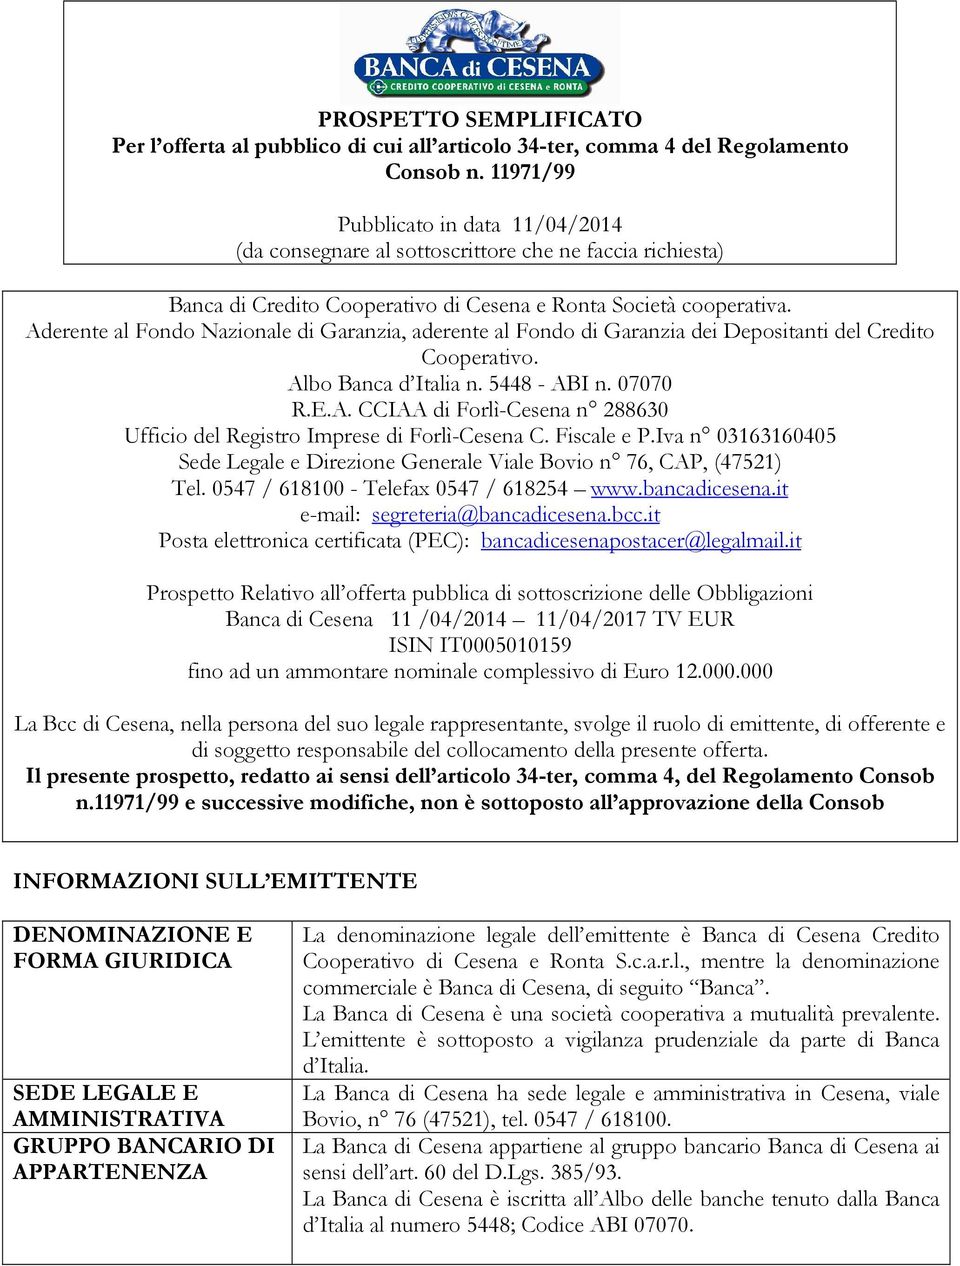 Aderente al Fondo Nazionale di Garanzia, aderente al Fondo di Garanzia dei Depositanti del Credito Cooperativo. Albo Banca d Italia n. 5448 - ABI n. 07070 R.E.A. CCIAA di Forlì-Cesena n 288630 Ufficio del Registro Imprese di Forlì-Cesena C.